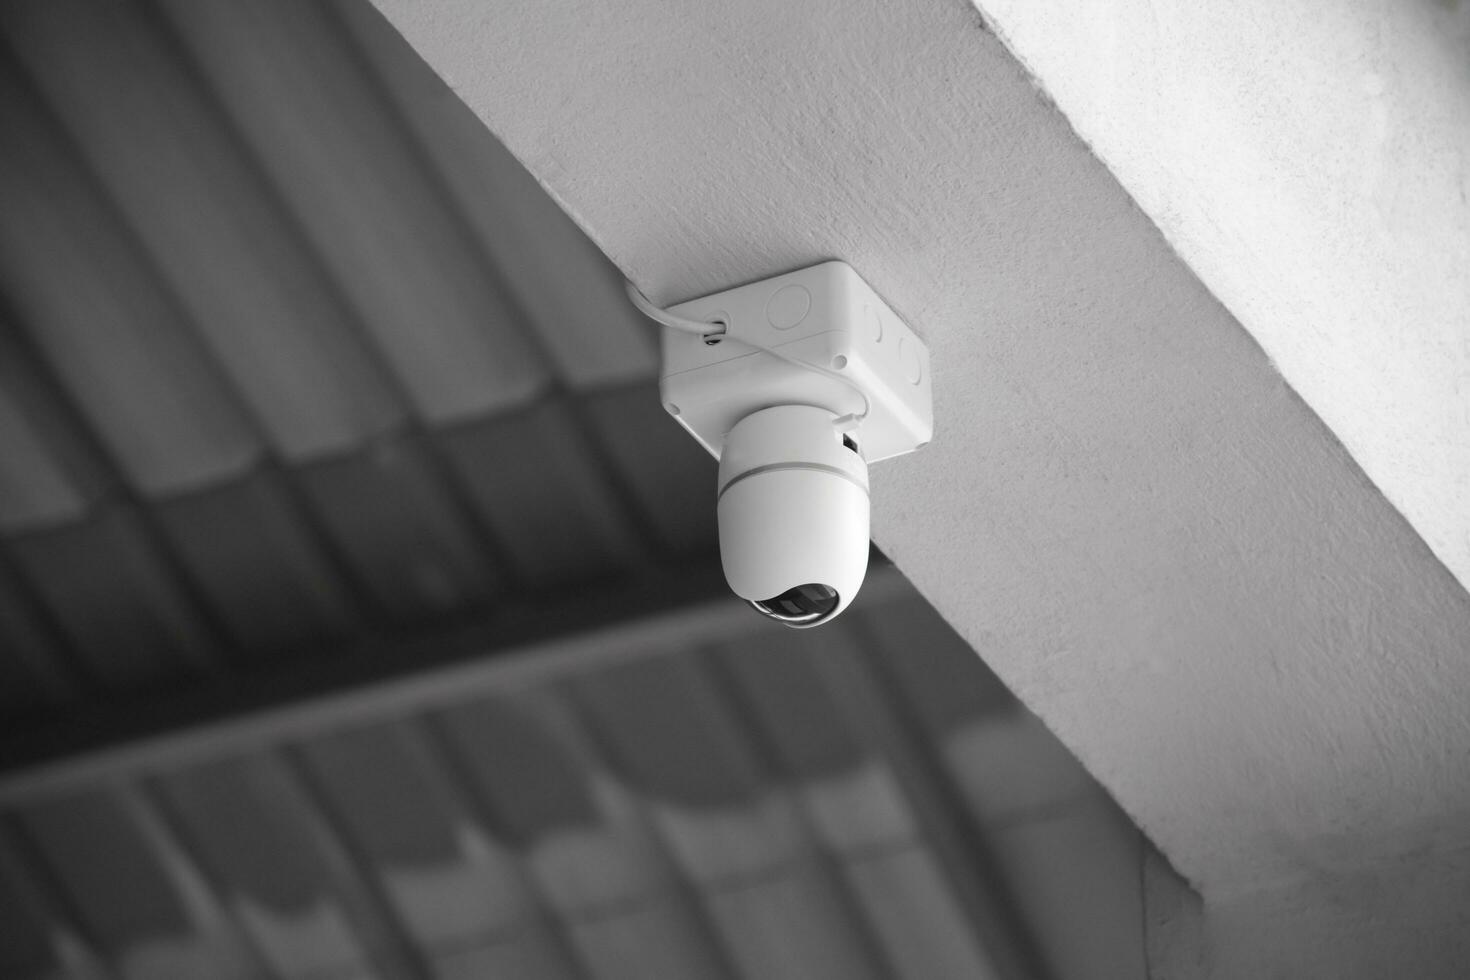 ip cctv cámara instalado en alto techo de el casa a hacer el seguridad por supervisión mediante móvil teléfono y computadora a salvar humano vida y propiedad, suave y selectivo enfocar. foto